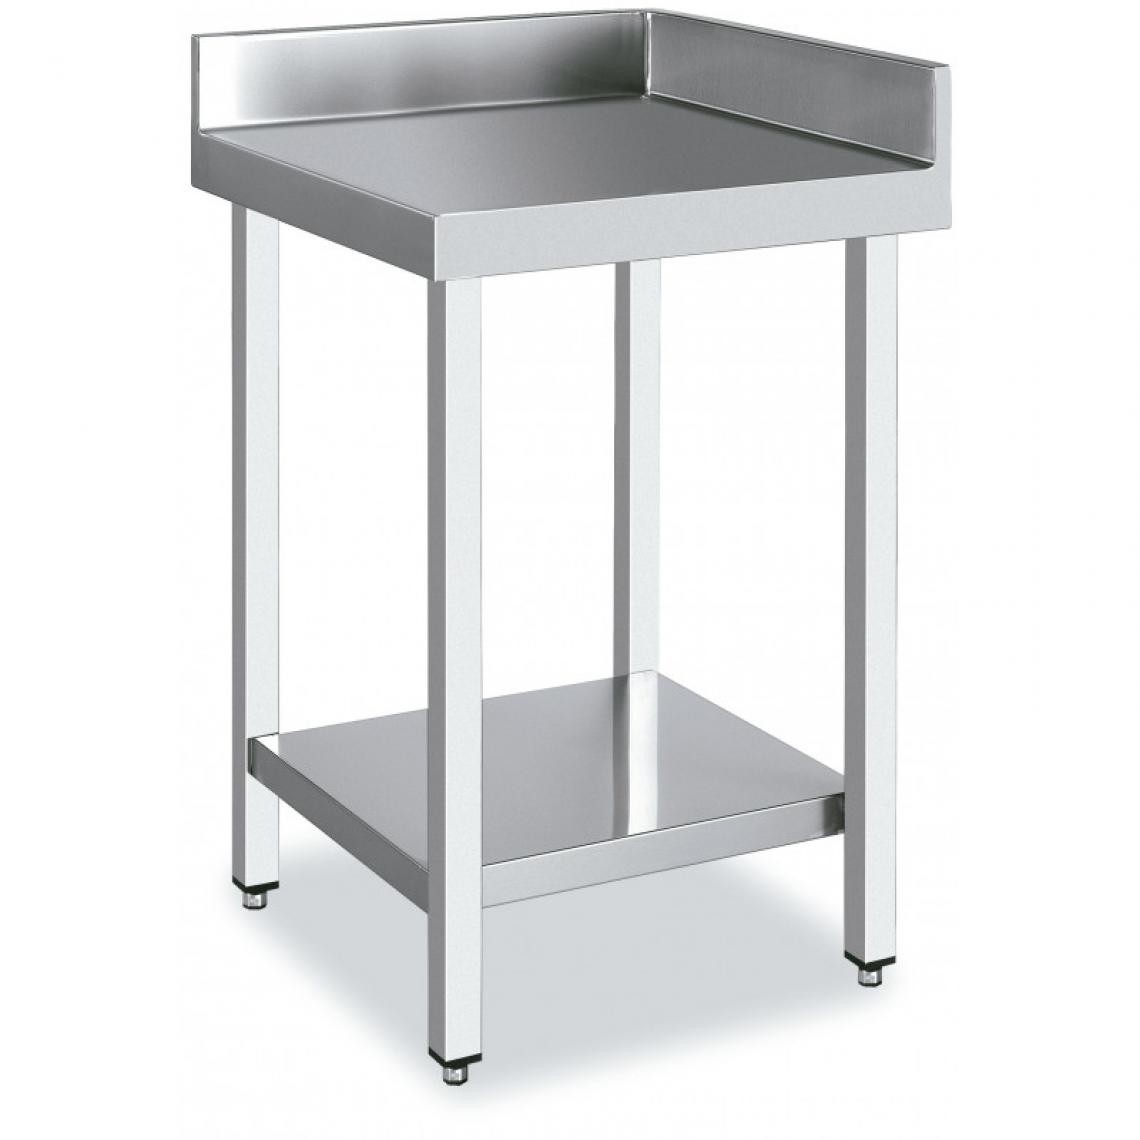 DISTFORM - Table d'Angle 90º avec 2 étagères - Distform - Acier inoxydable600x700 - Tables à manger